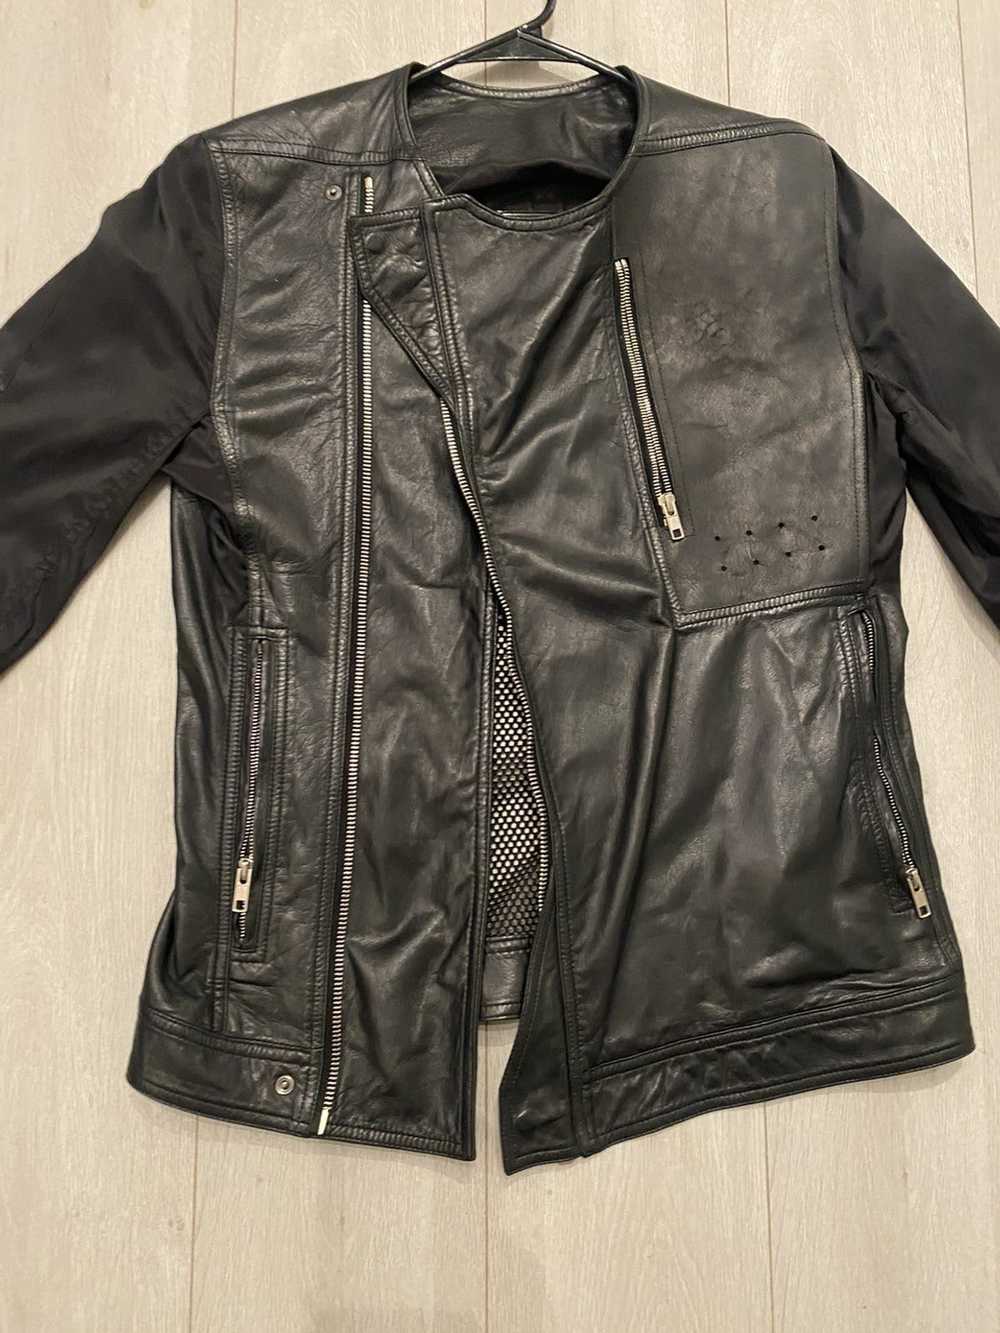 Rick Owens 2014 Rick Owens Leather & Nylon jacket - image 2